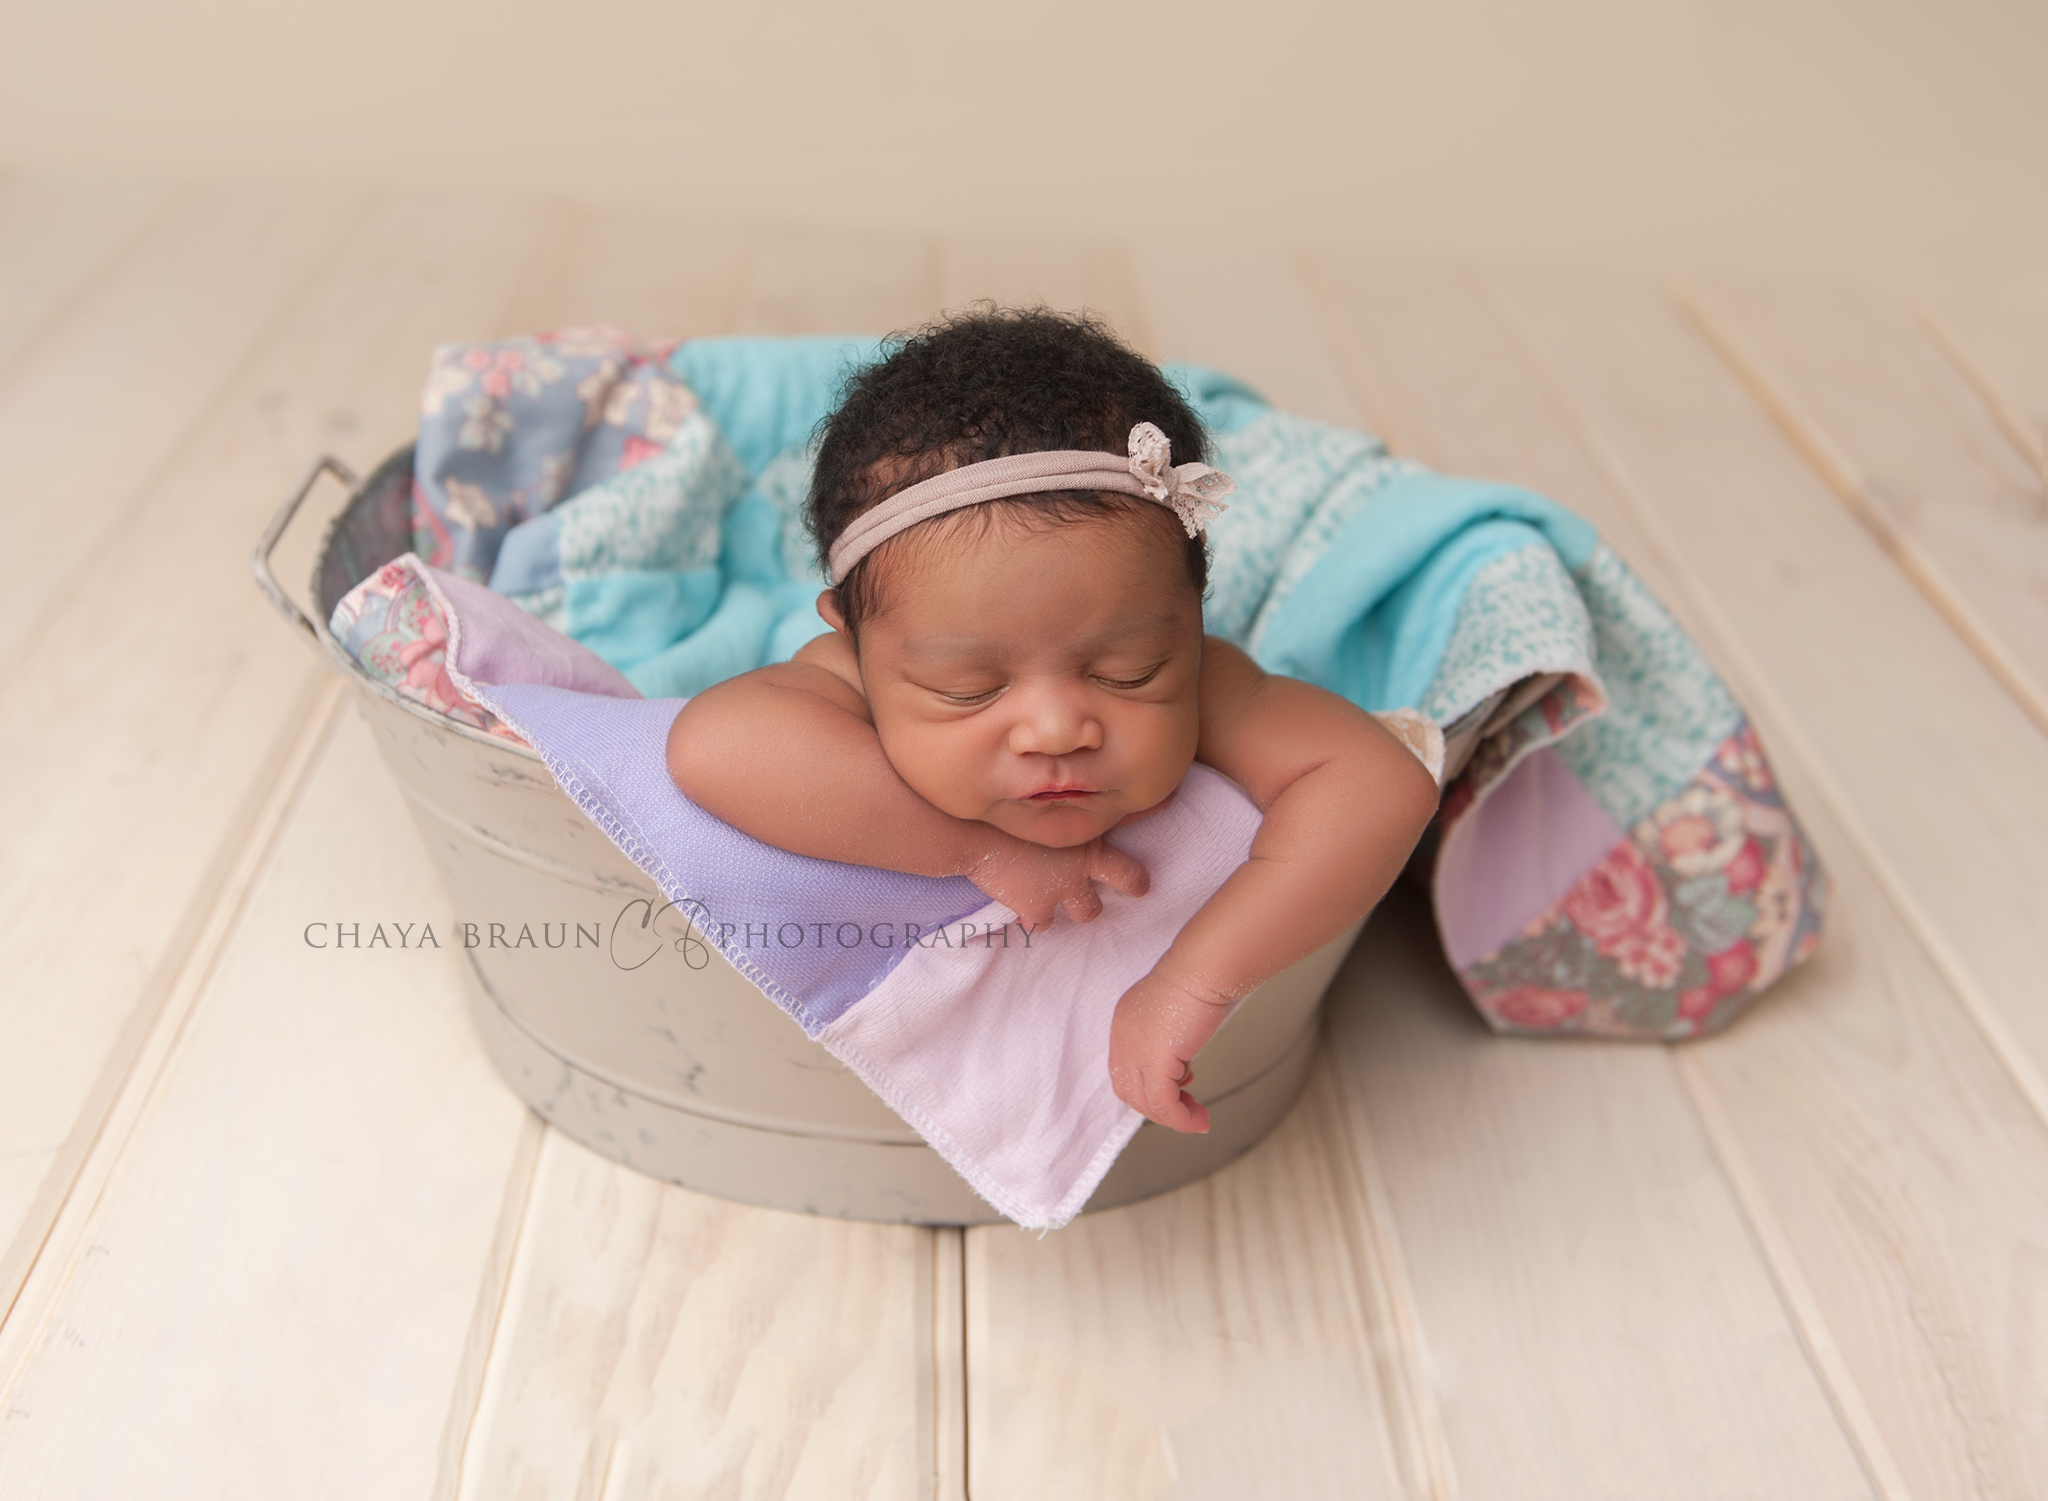 Chaya Braun Photography - newborn photographer in Baltimore